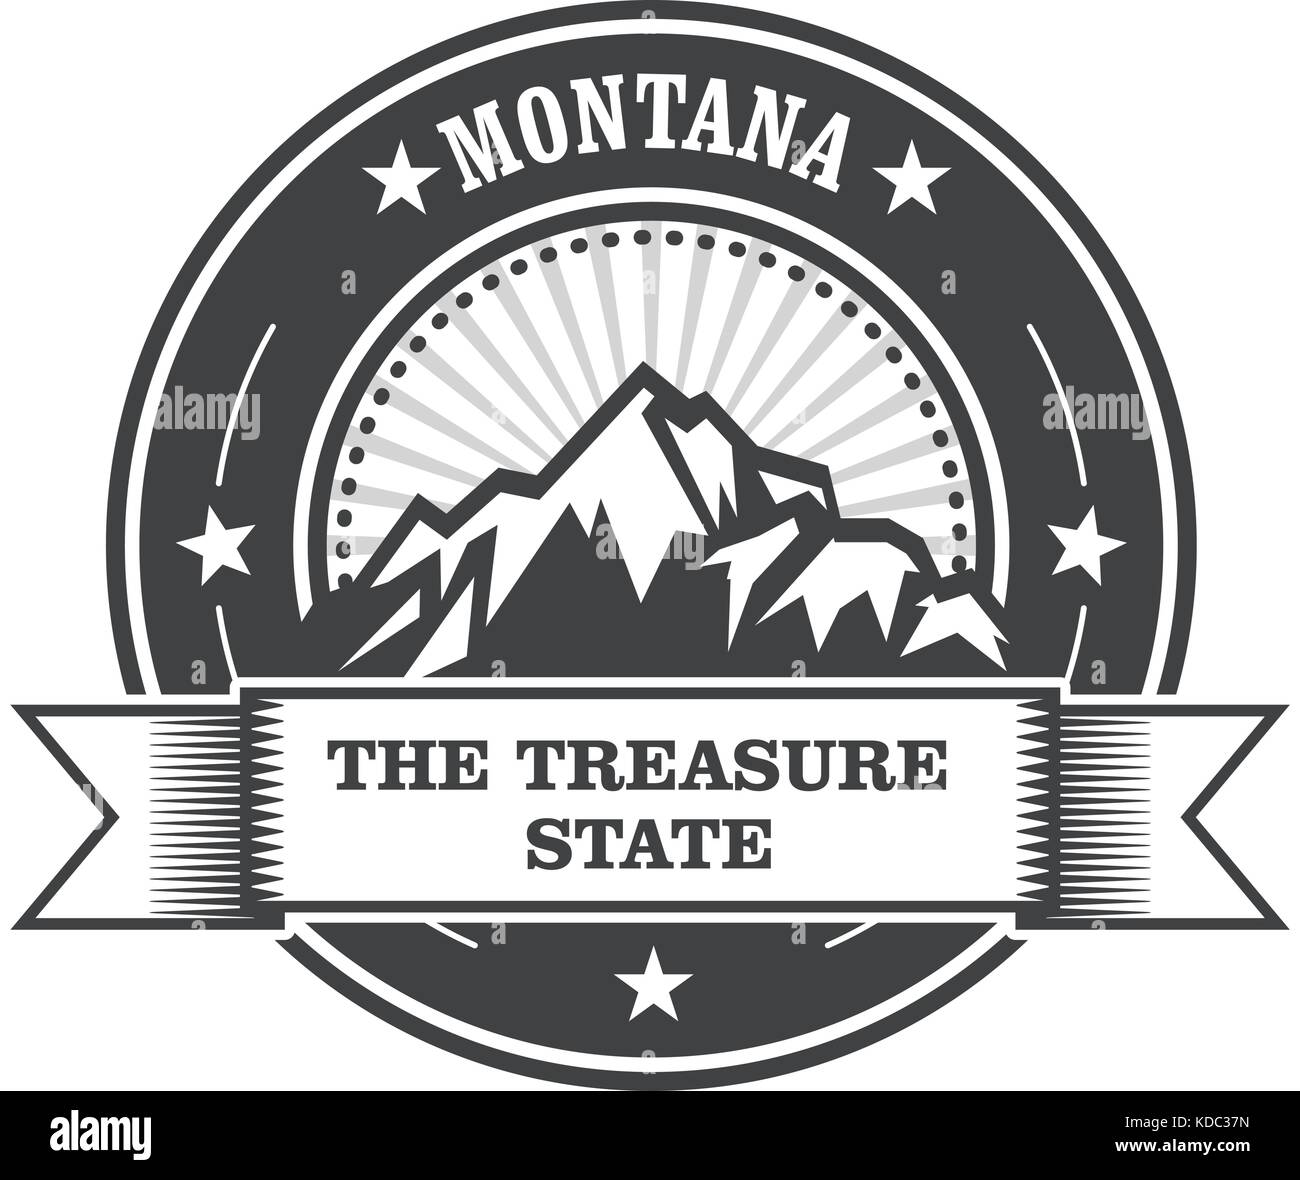 Montagnes du Montana - treasure state stamp label Illustration de Vecteur